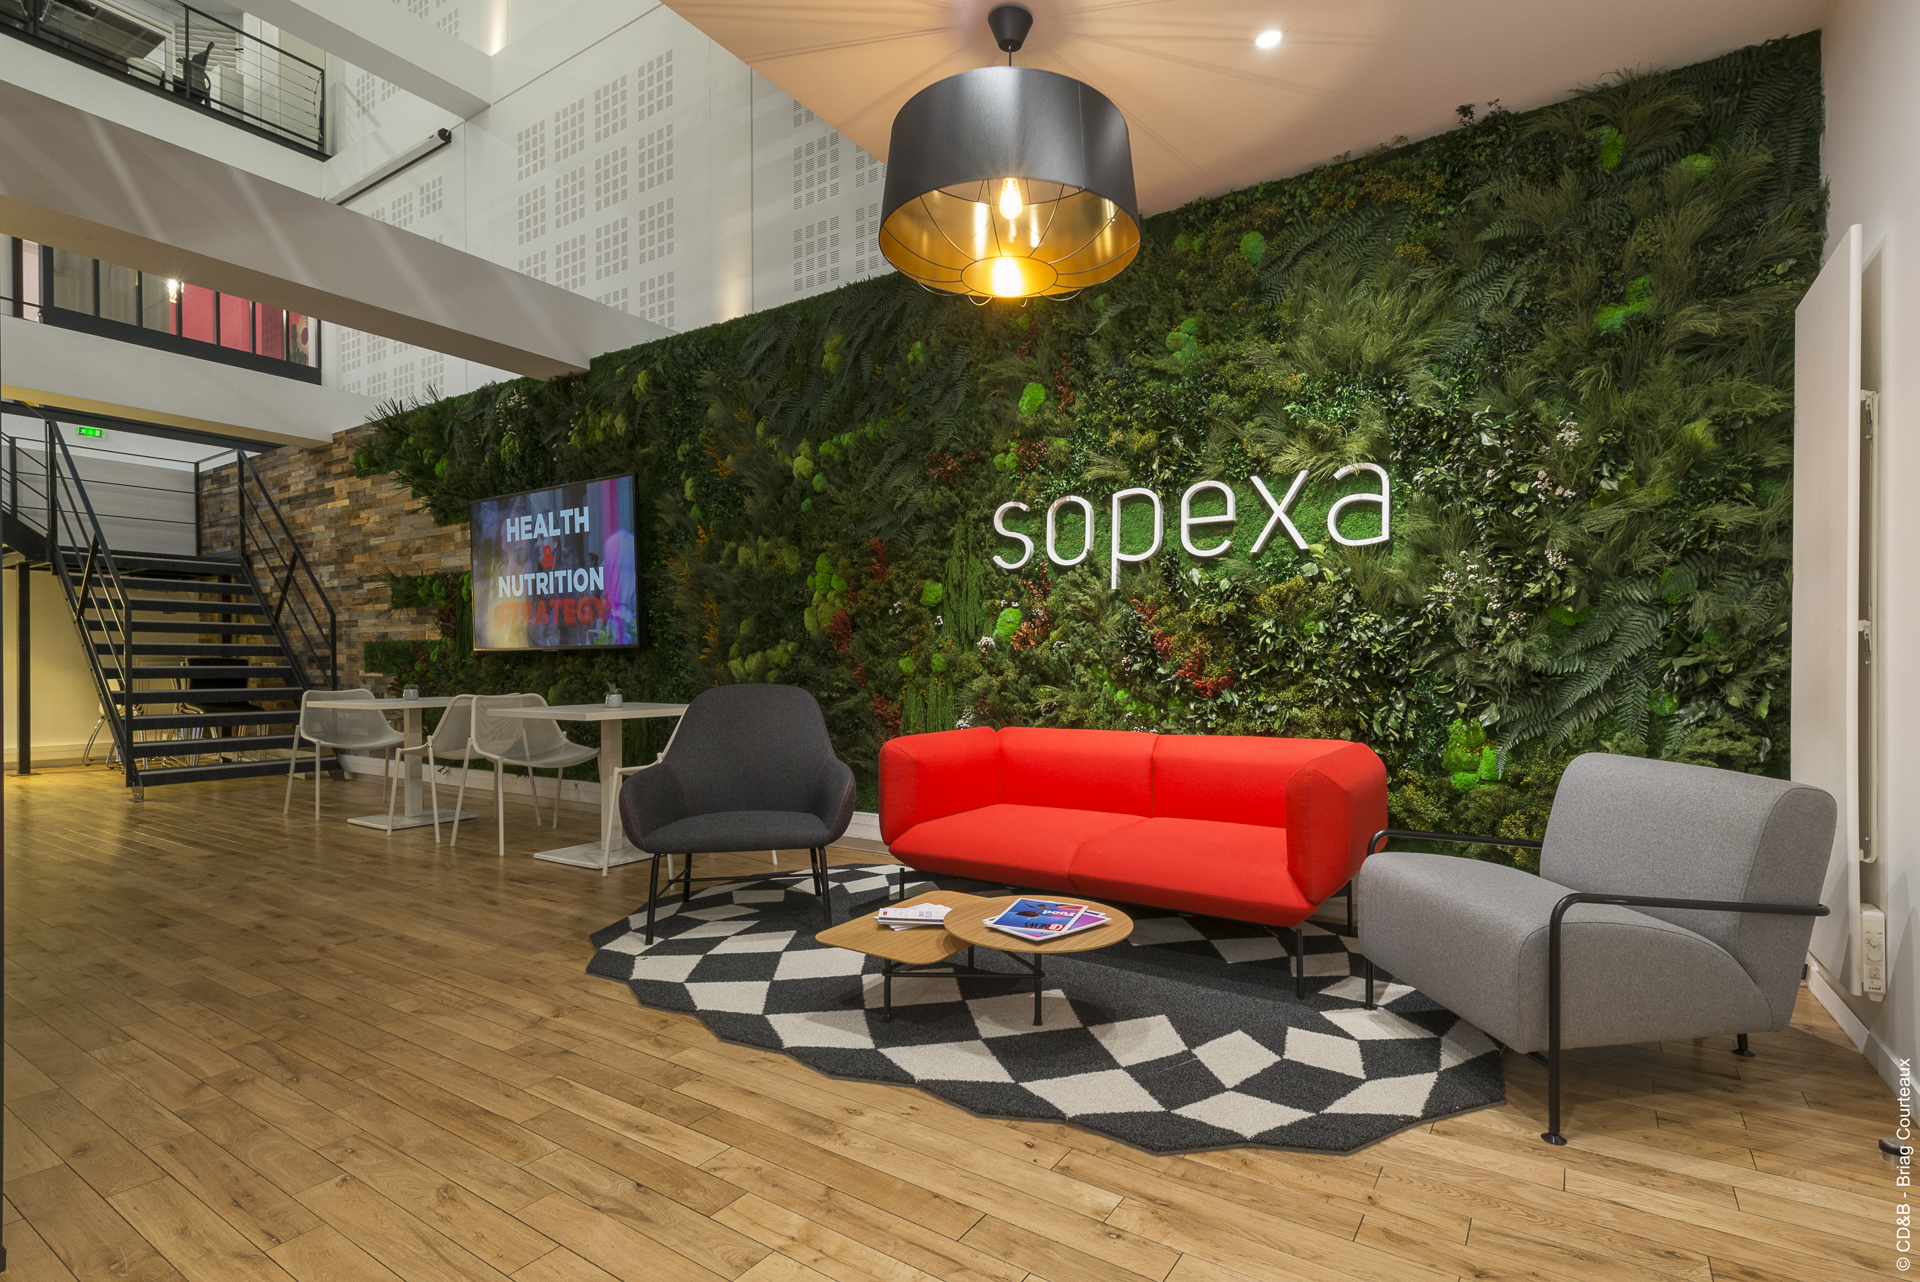 Conseil, aménagement, conception et réalisation des espaces de bureaux de la société SOPEXA par CDB, Meet you there.